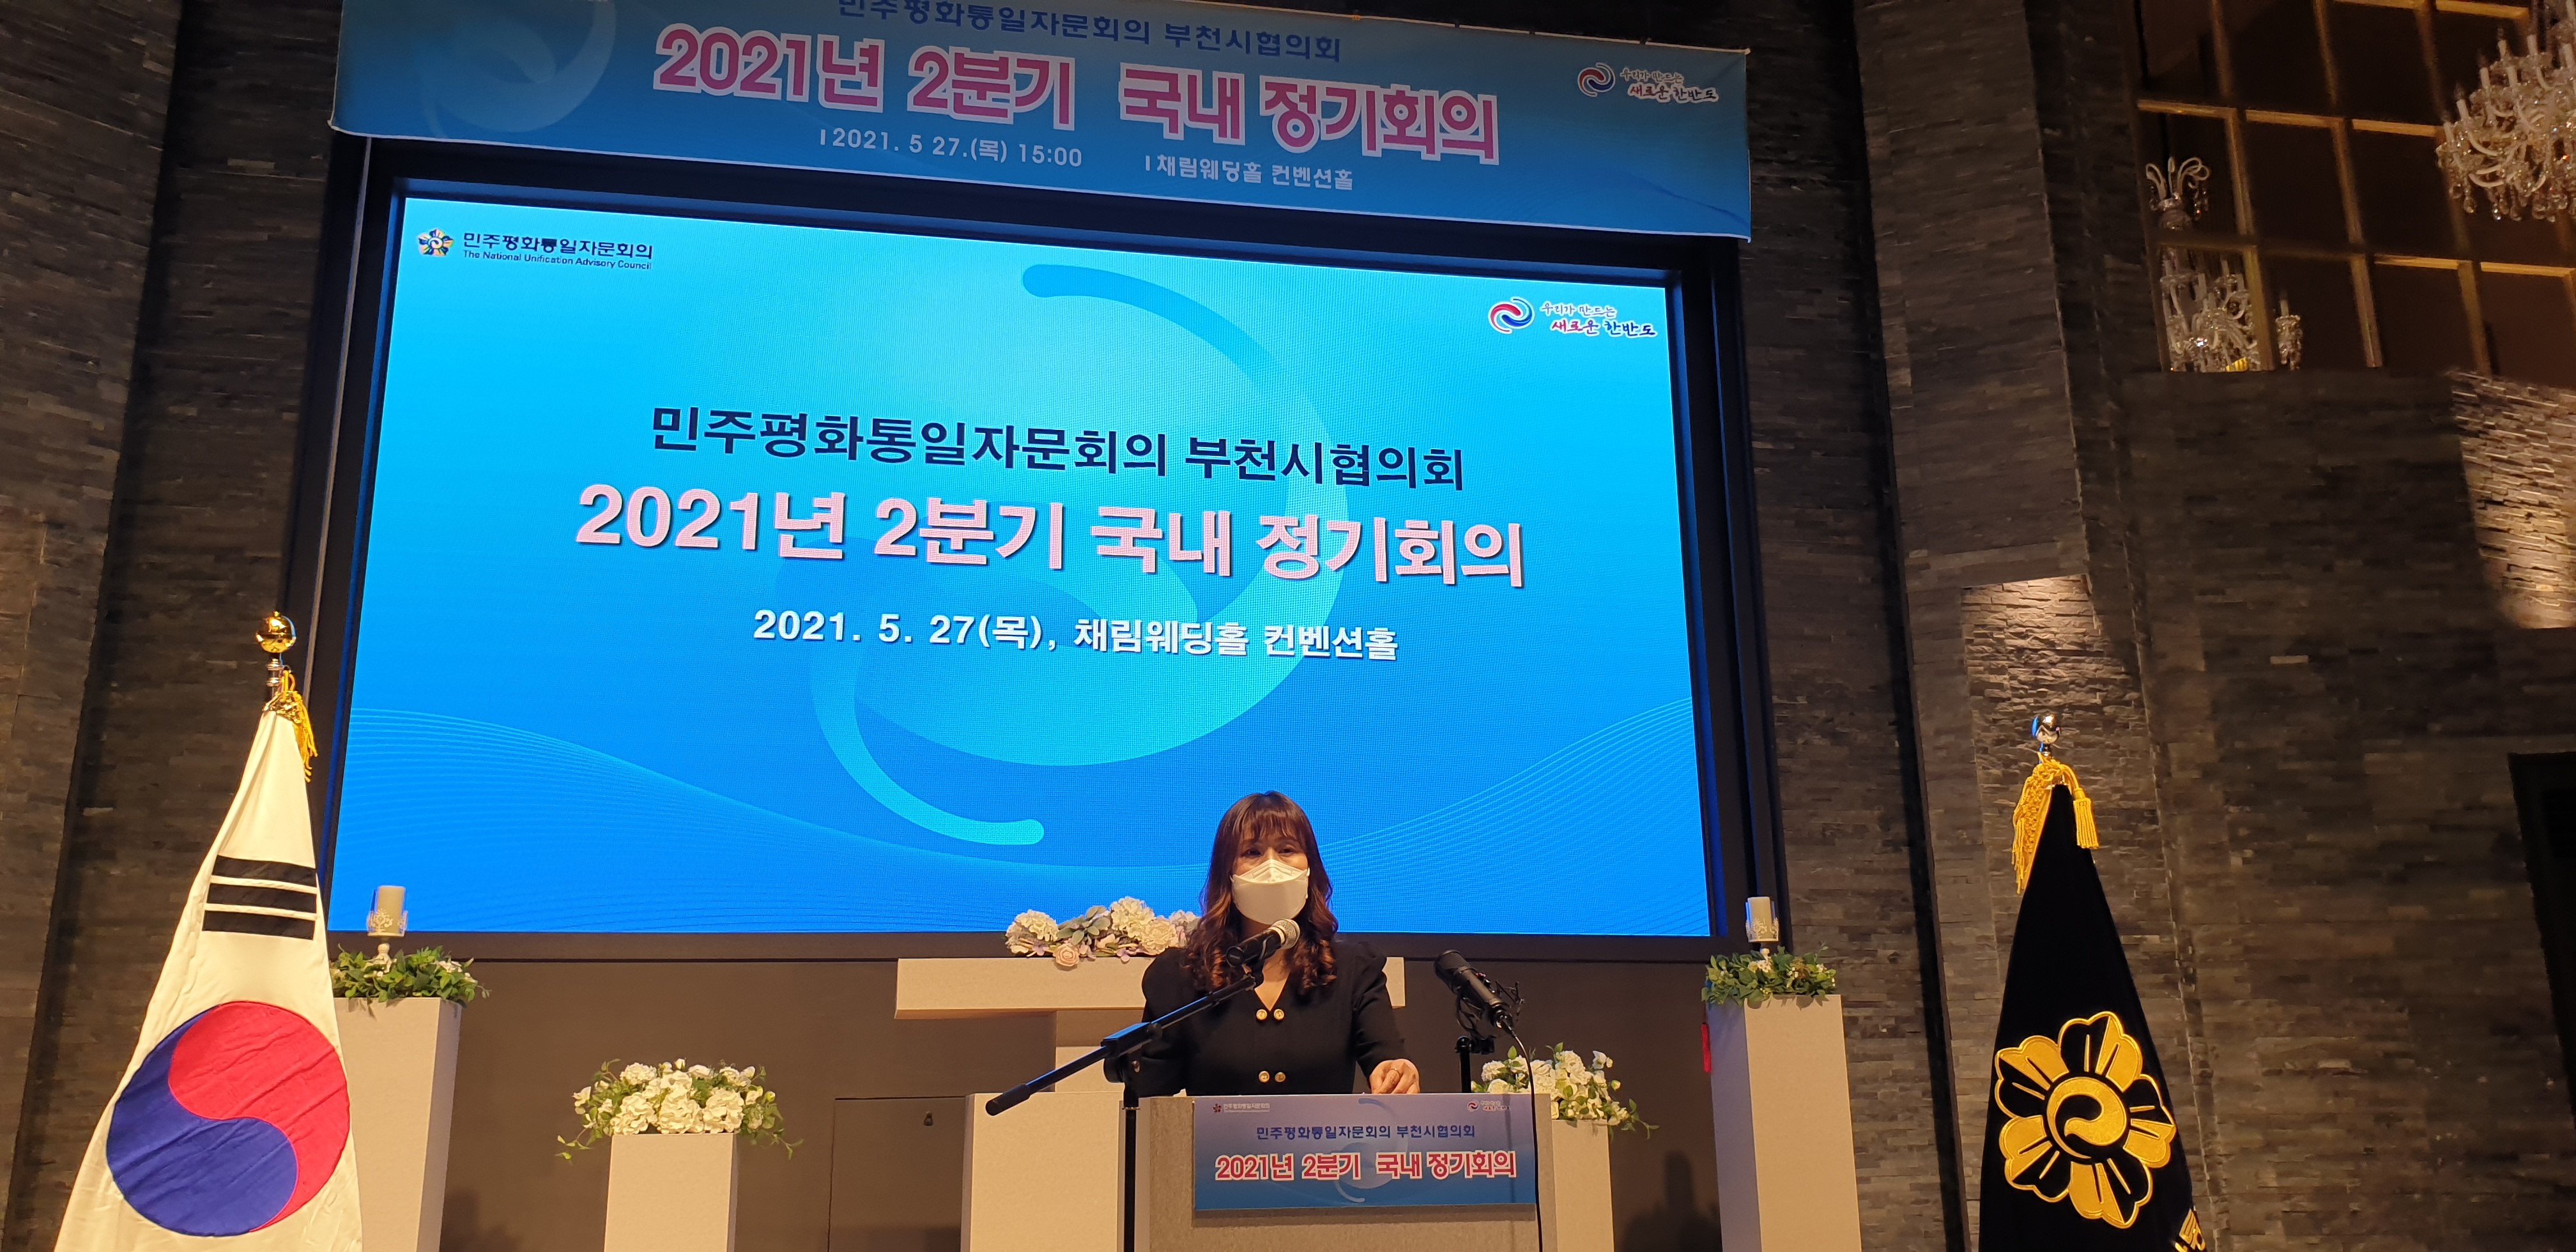 민주평통 부천시협의회 “2021년 2분기 정기회의 개최”